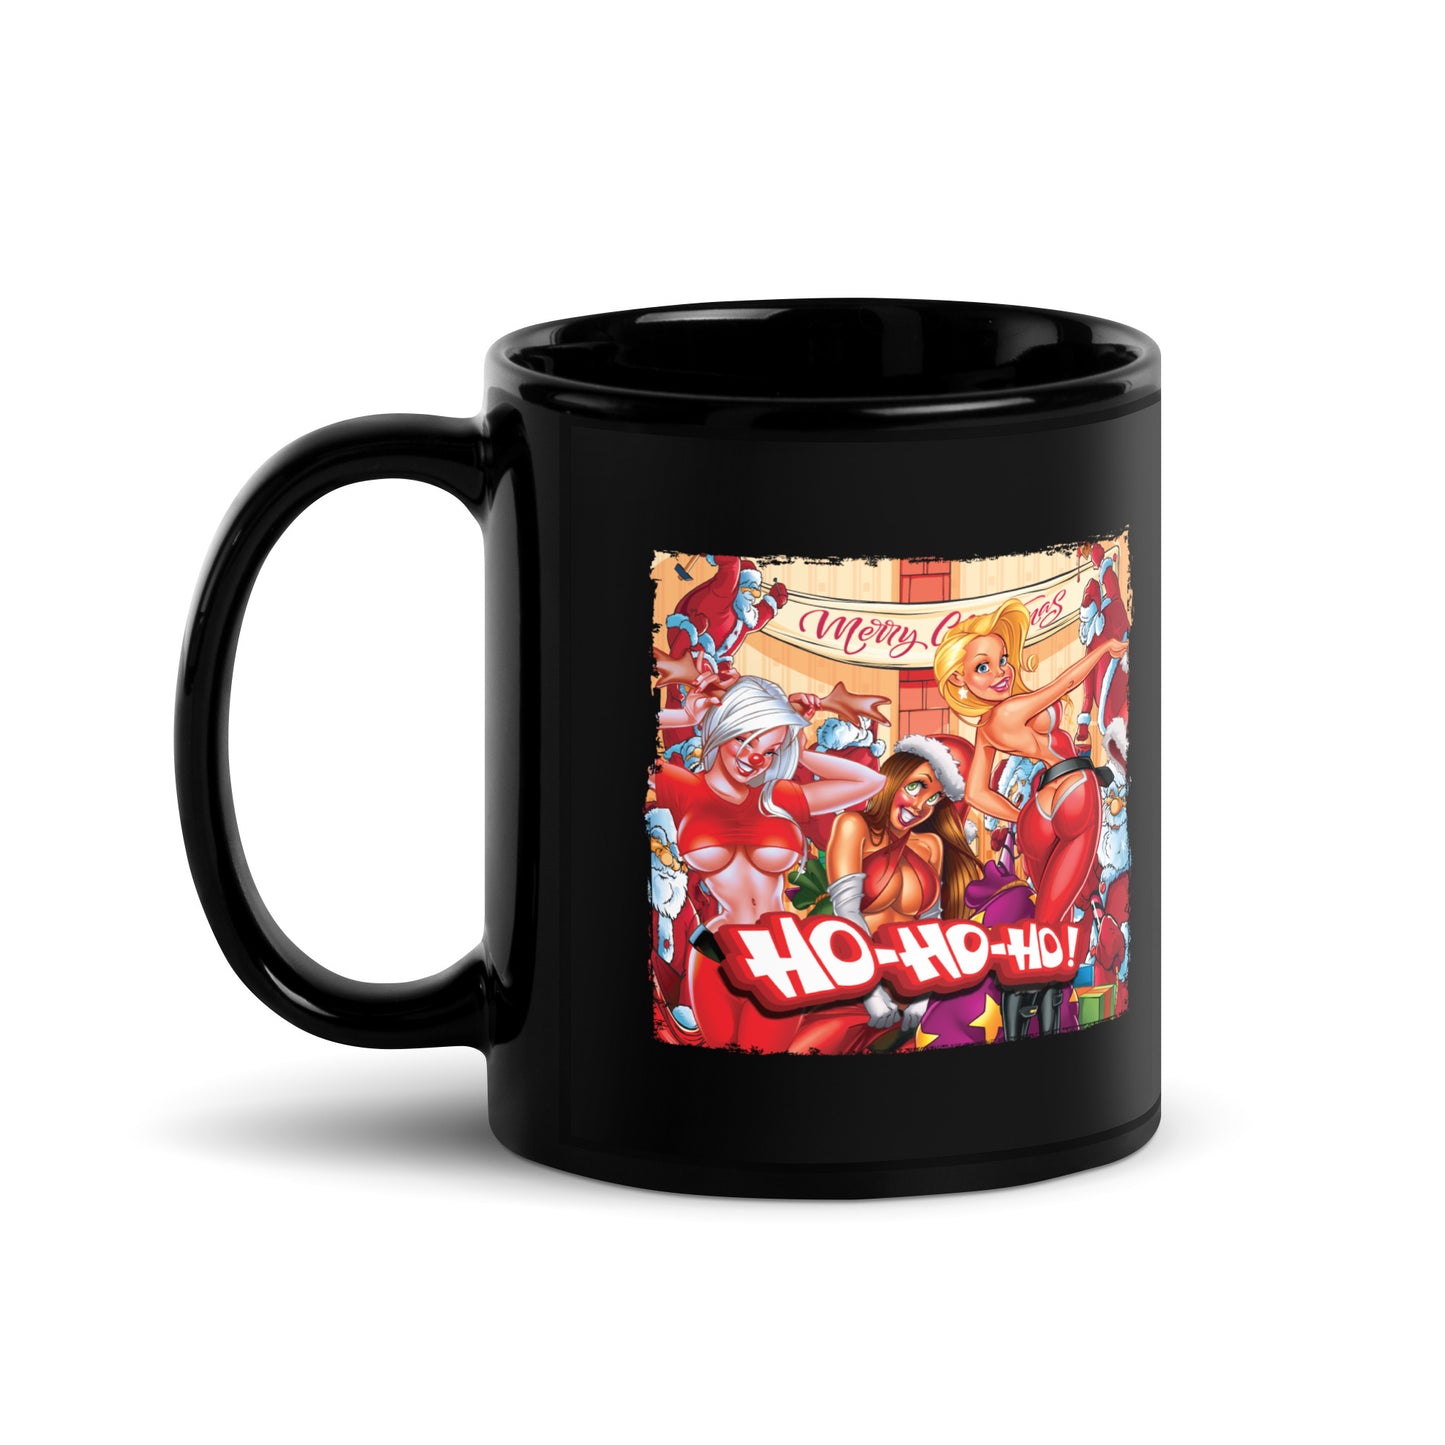 Hohoho 2021 Coffee Mug